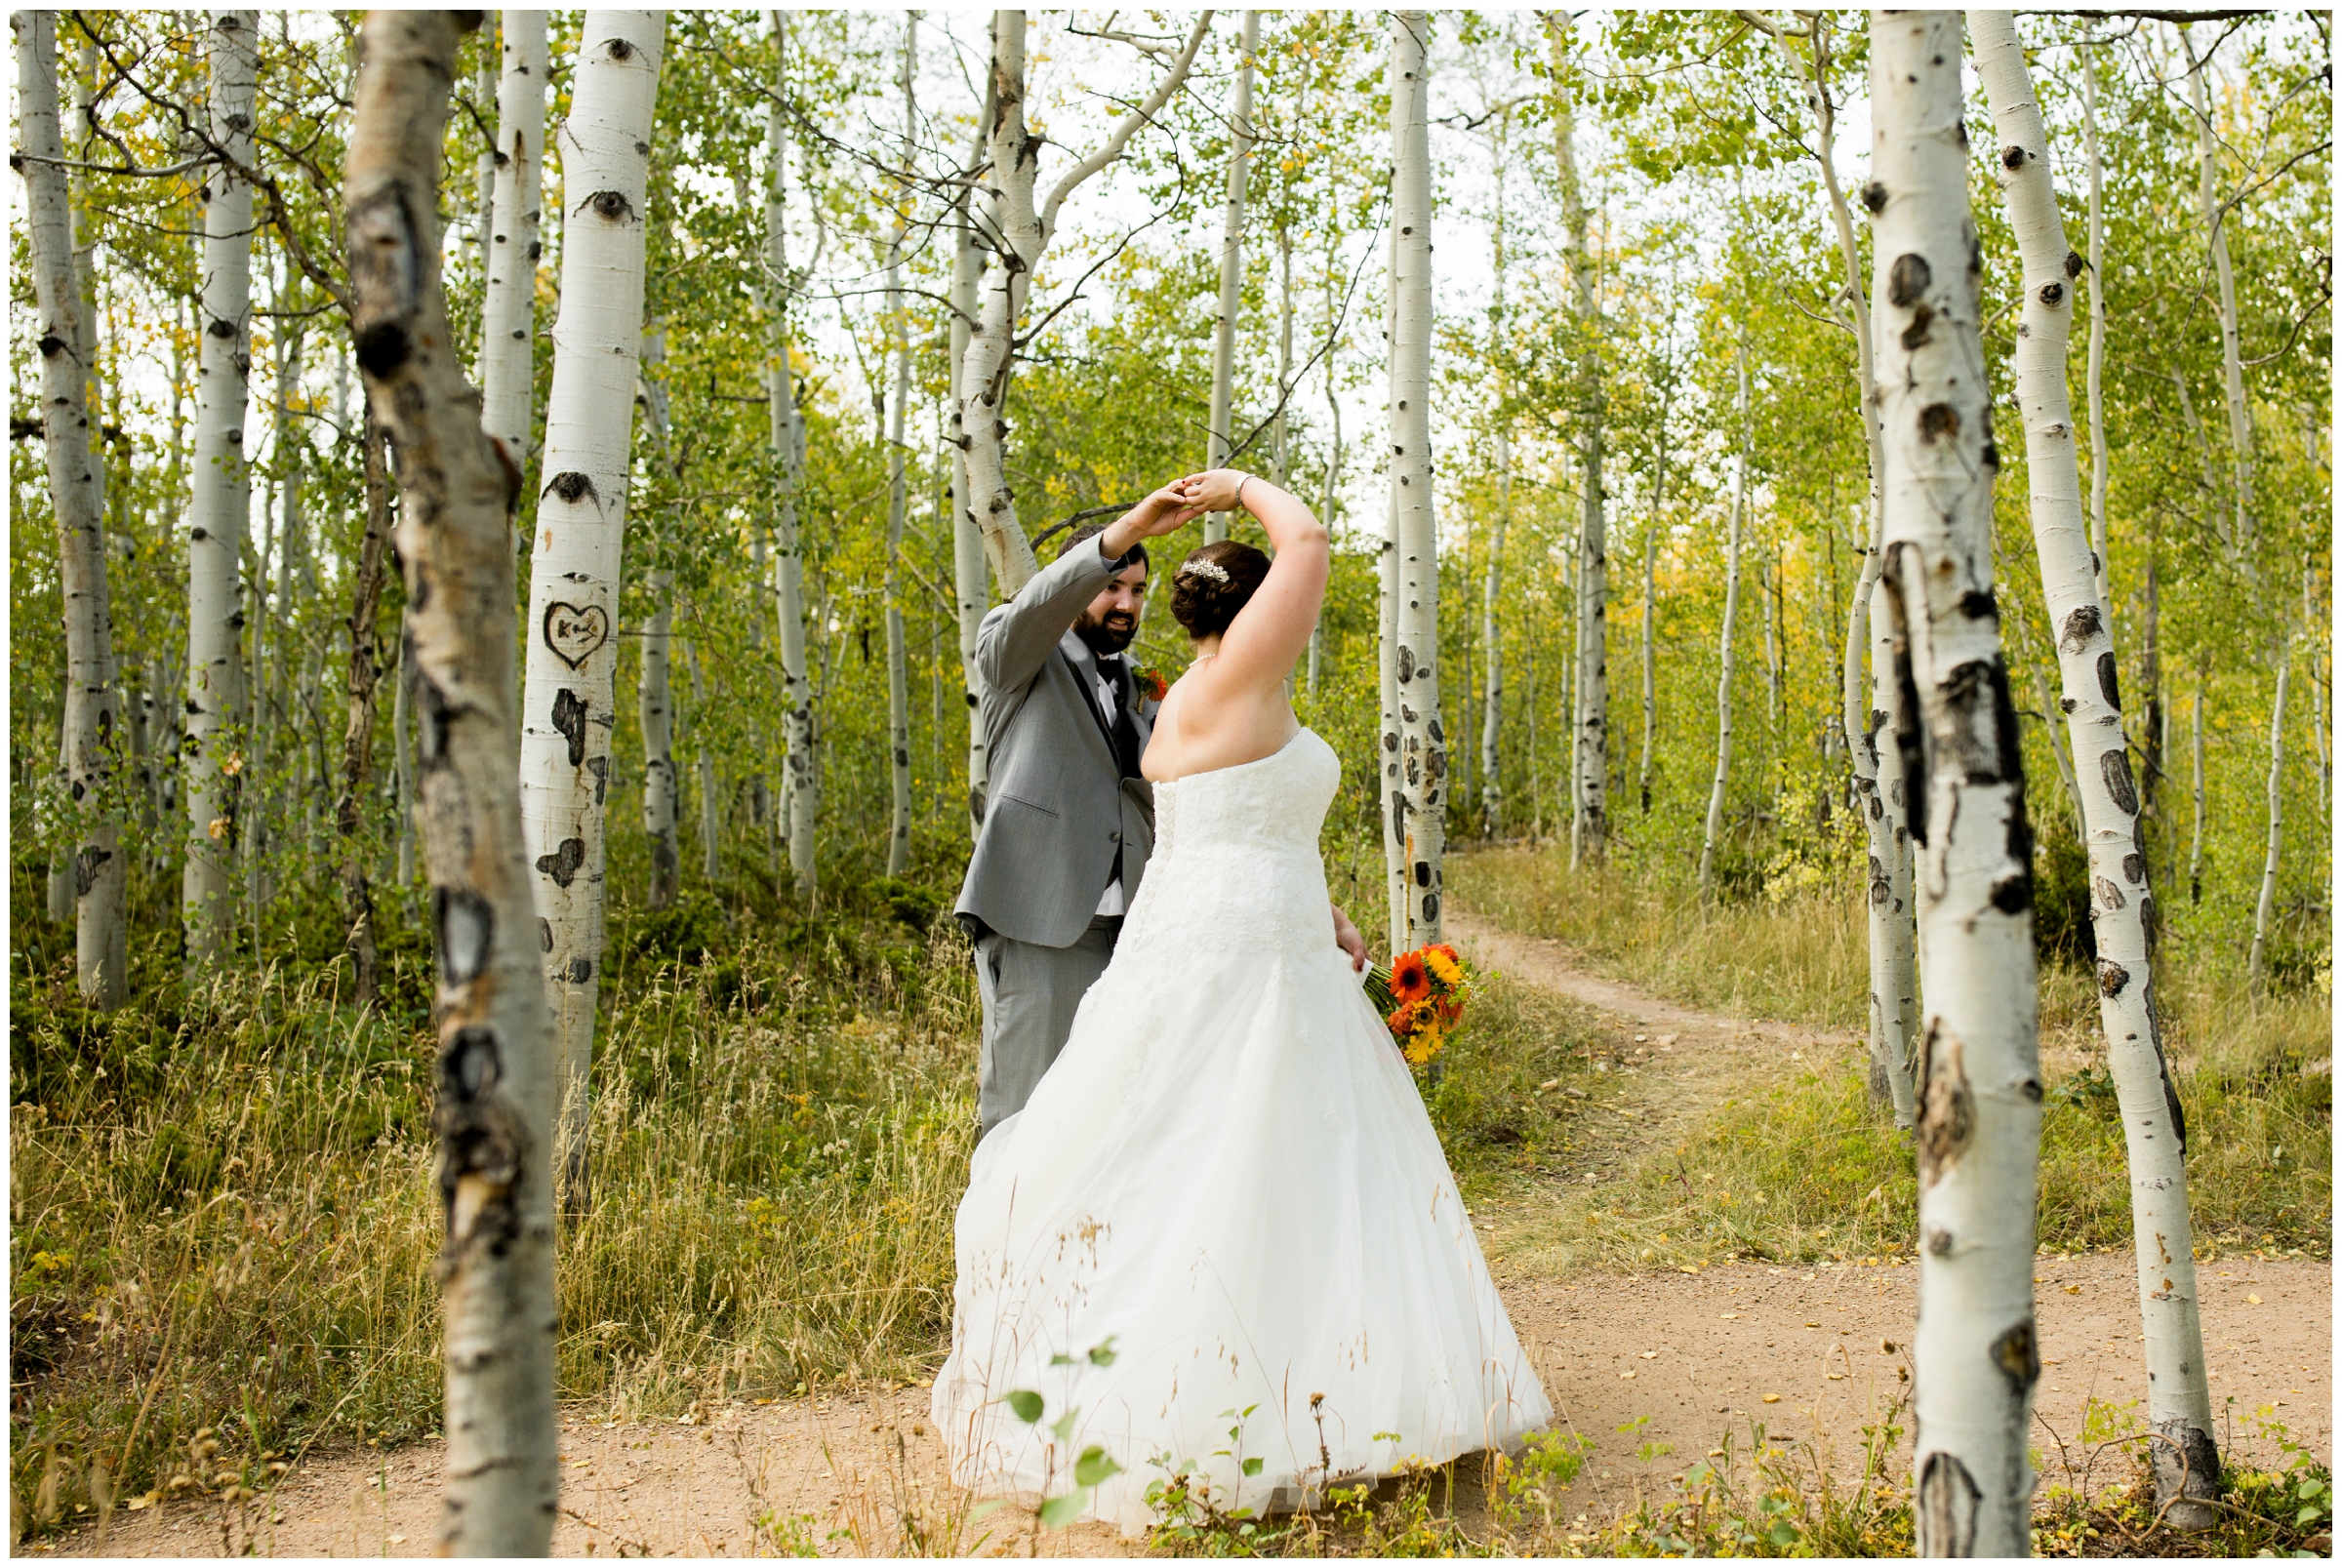 groom spinning bride in aspen grove at Granby Colorado summer wedding